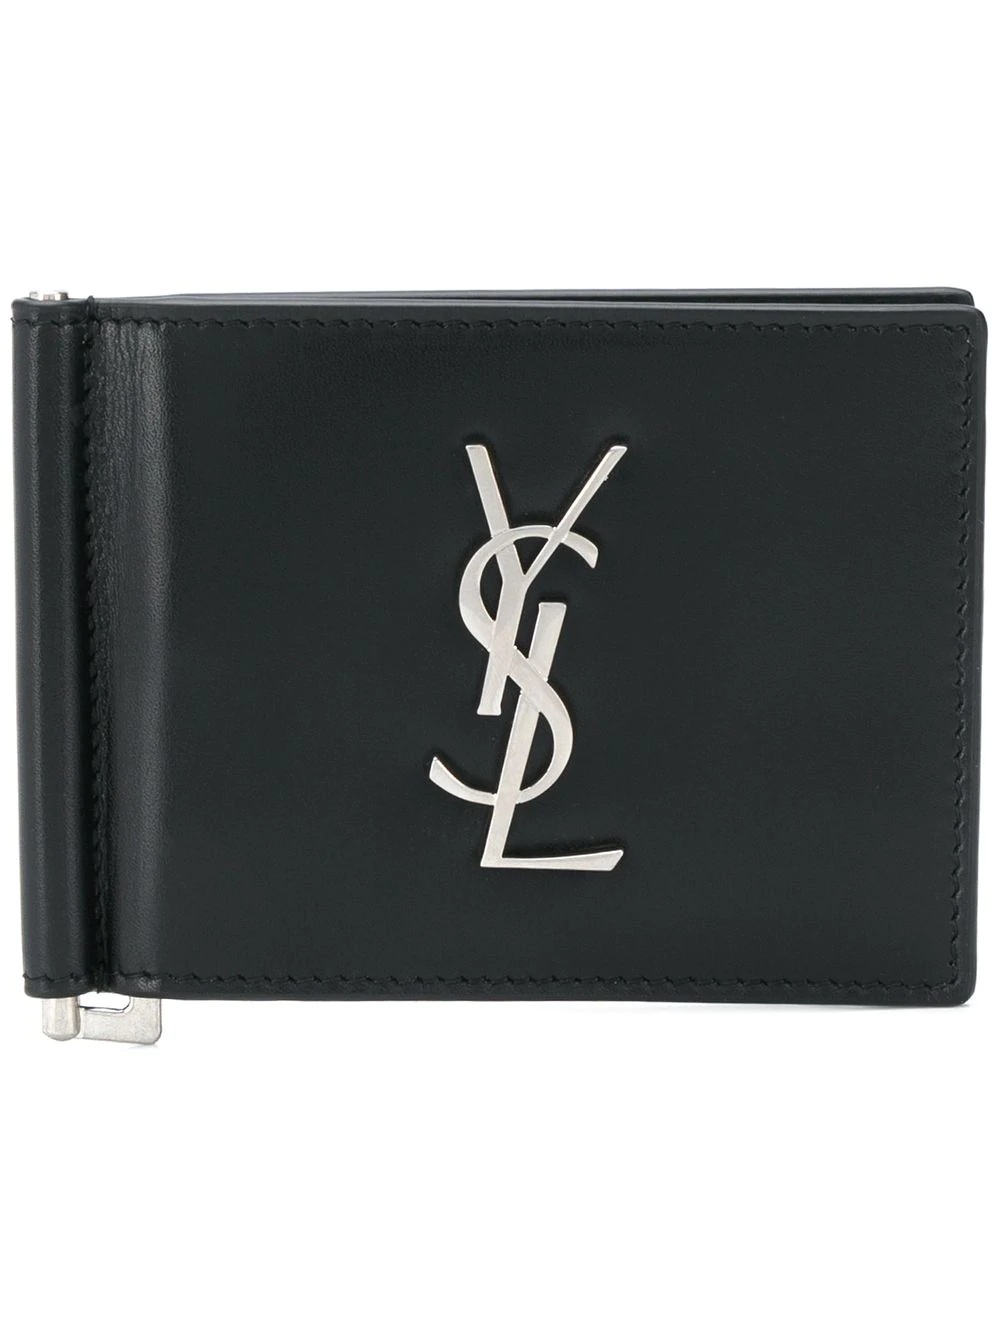 Monogram logo wallet - 1